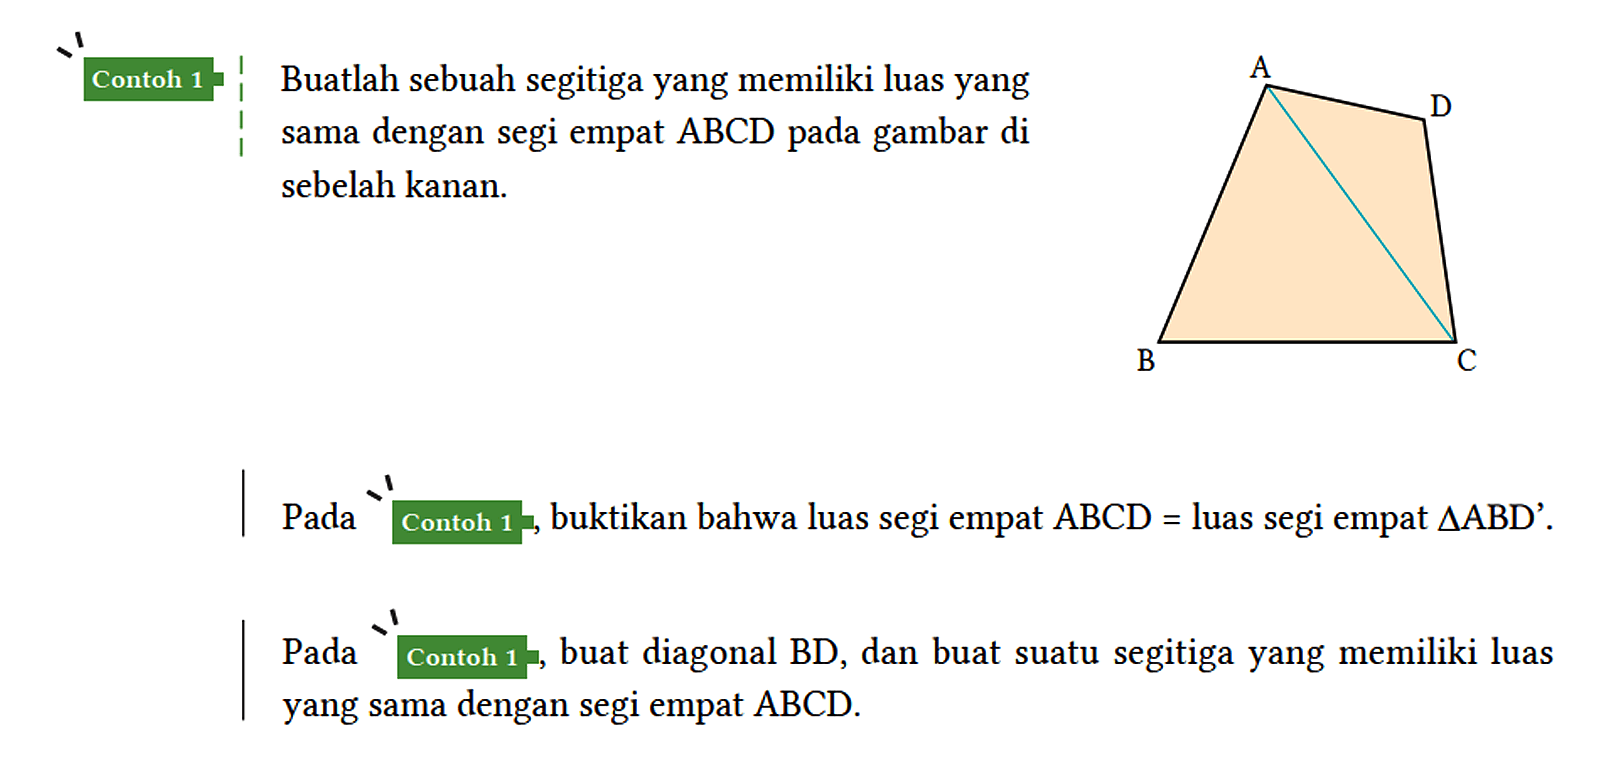 Contoh 1 Buatlah sebuah segitiga yang memiliki luas yang sama dengan segi empat ABCD pada gambar di sebelah kanan. A B C D Pada Contoh 1, buktikan bahwa luas segi empat ABCD = luas segiempat segiitga ABD'. Pada contoh 1, buat diagonal BD, dan buat suatu segitiga yang memiliki luas yang sama dengan segi empat ABCD/